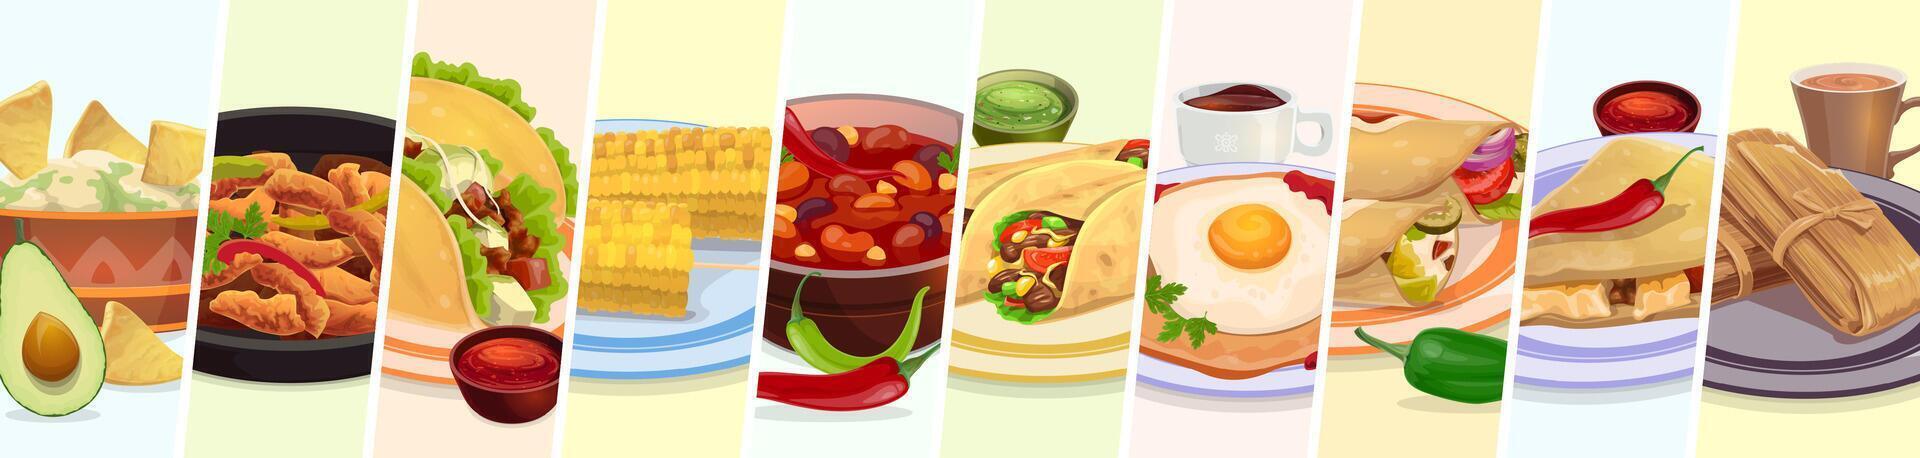 Mexicaans voedsel collage, tex Mex maaltijd, nagerecht, drinken vector